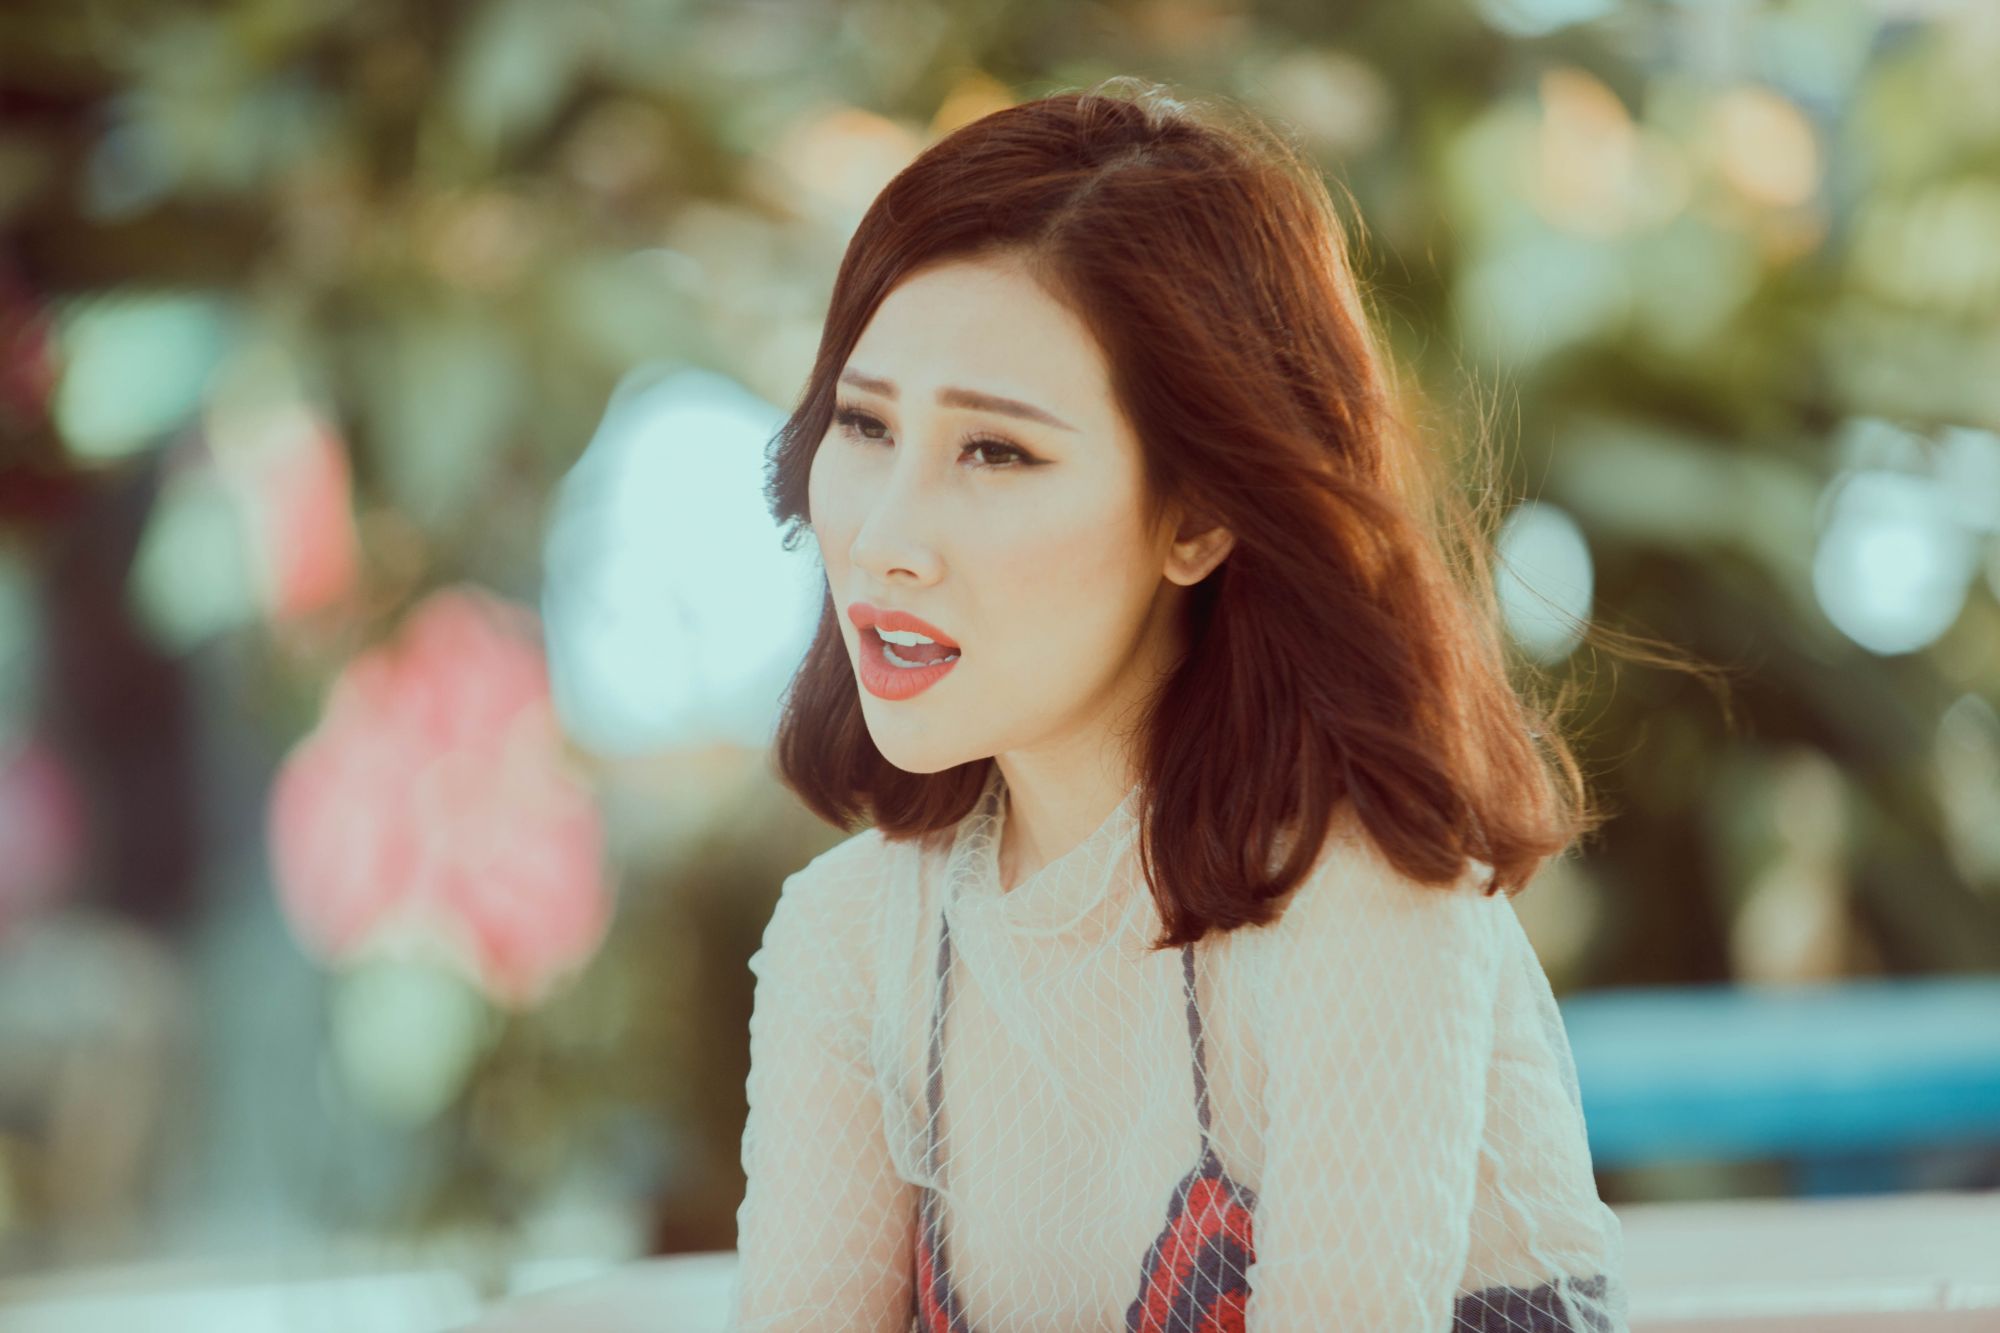 Yến Nhi: Yến Nhi là một trong những cái tên nổi bật trong thế giới giải trí Việt Nam. Với ngoại hình nóng bỏng và phong cách thời trang khác biệt, cô ấy đã thu hút được sự quan tâm của rất nhiều người. Với những bức ảnh xinh đẹp liên quan đến Yến Nhi, bạn sẽ được tận hưởng một trải nghiệm đầy cảm xúc và không thể quên.